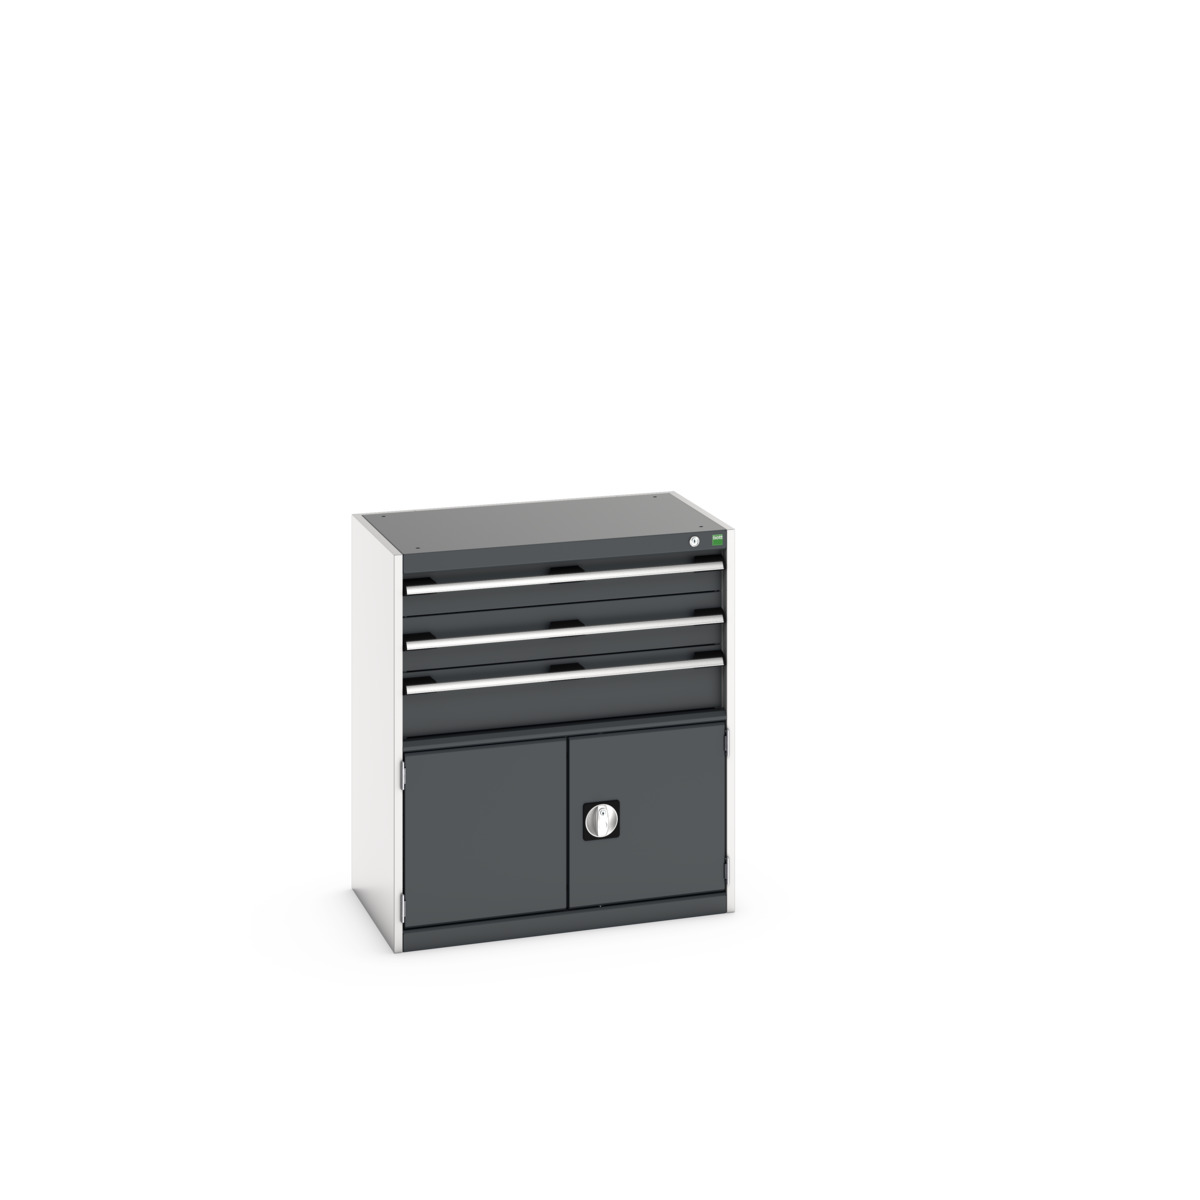 40012023. - cubio drawer-door cabinet